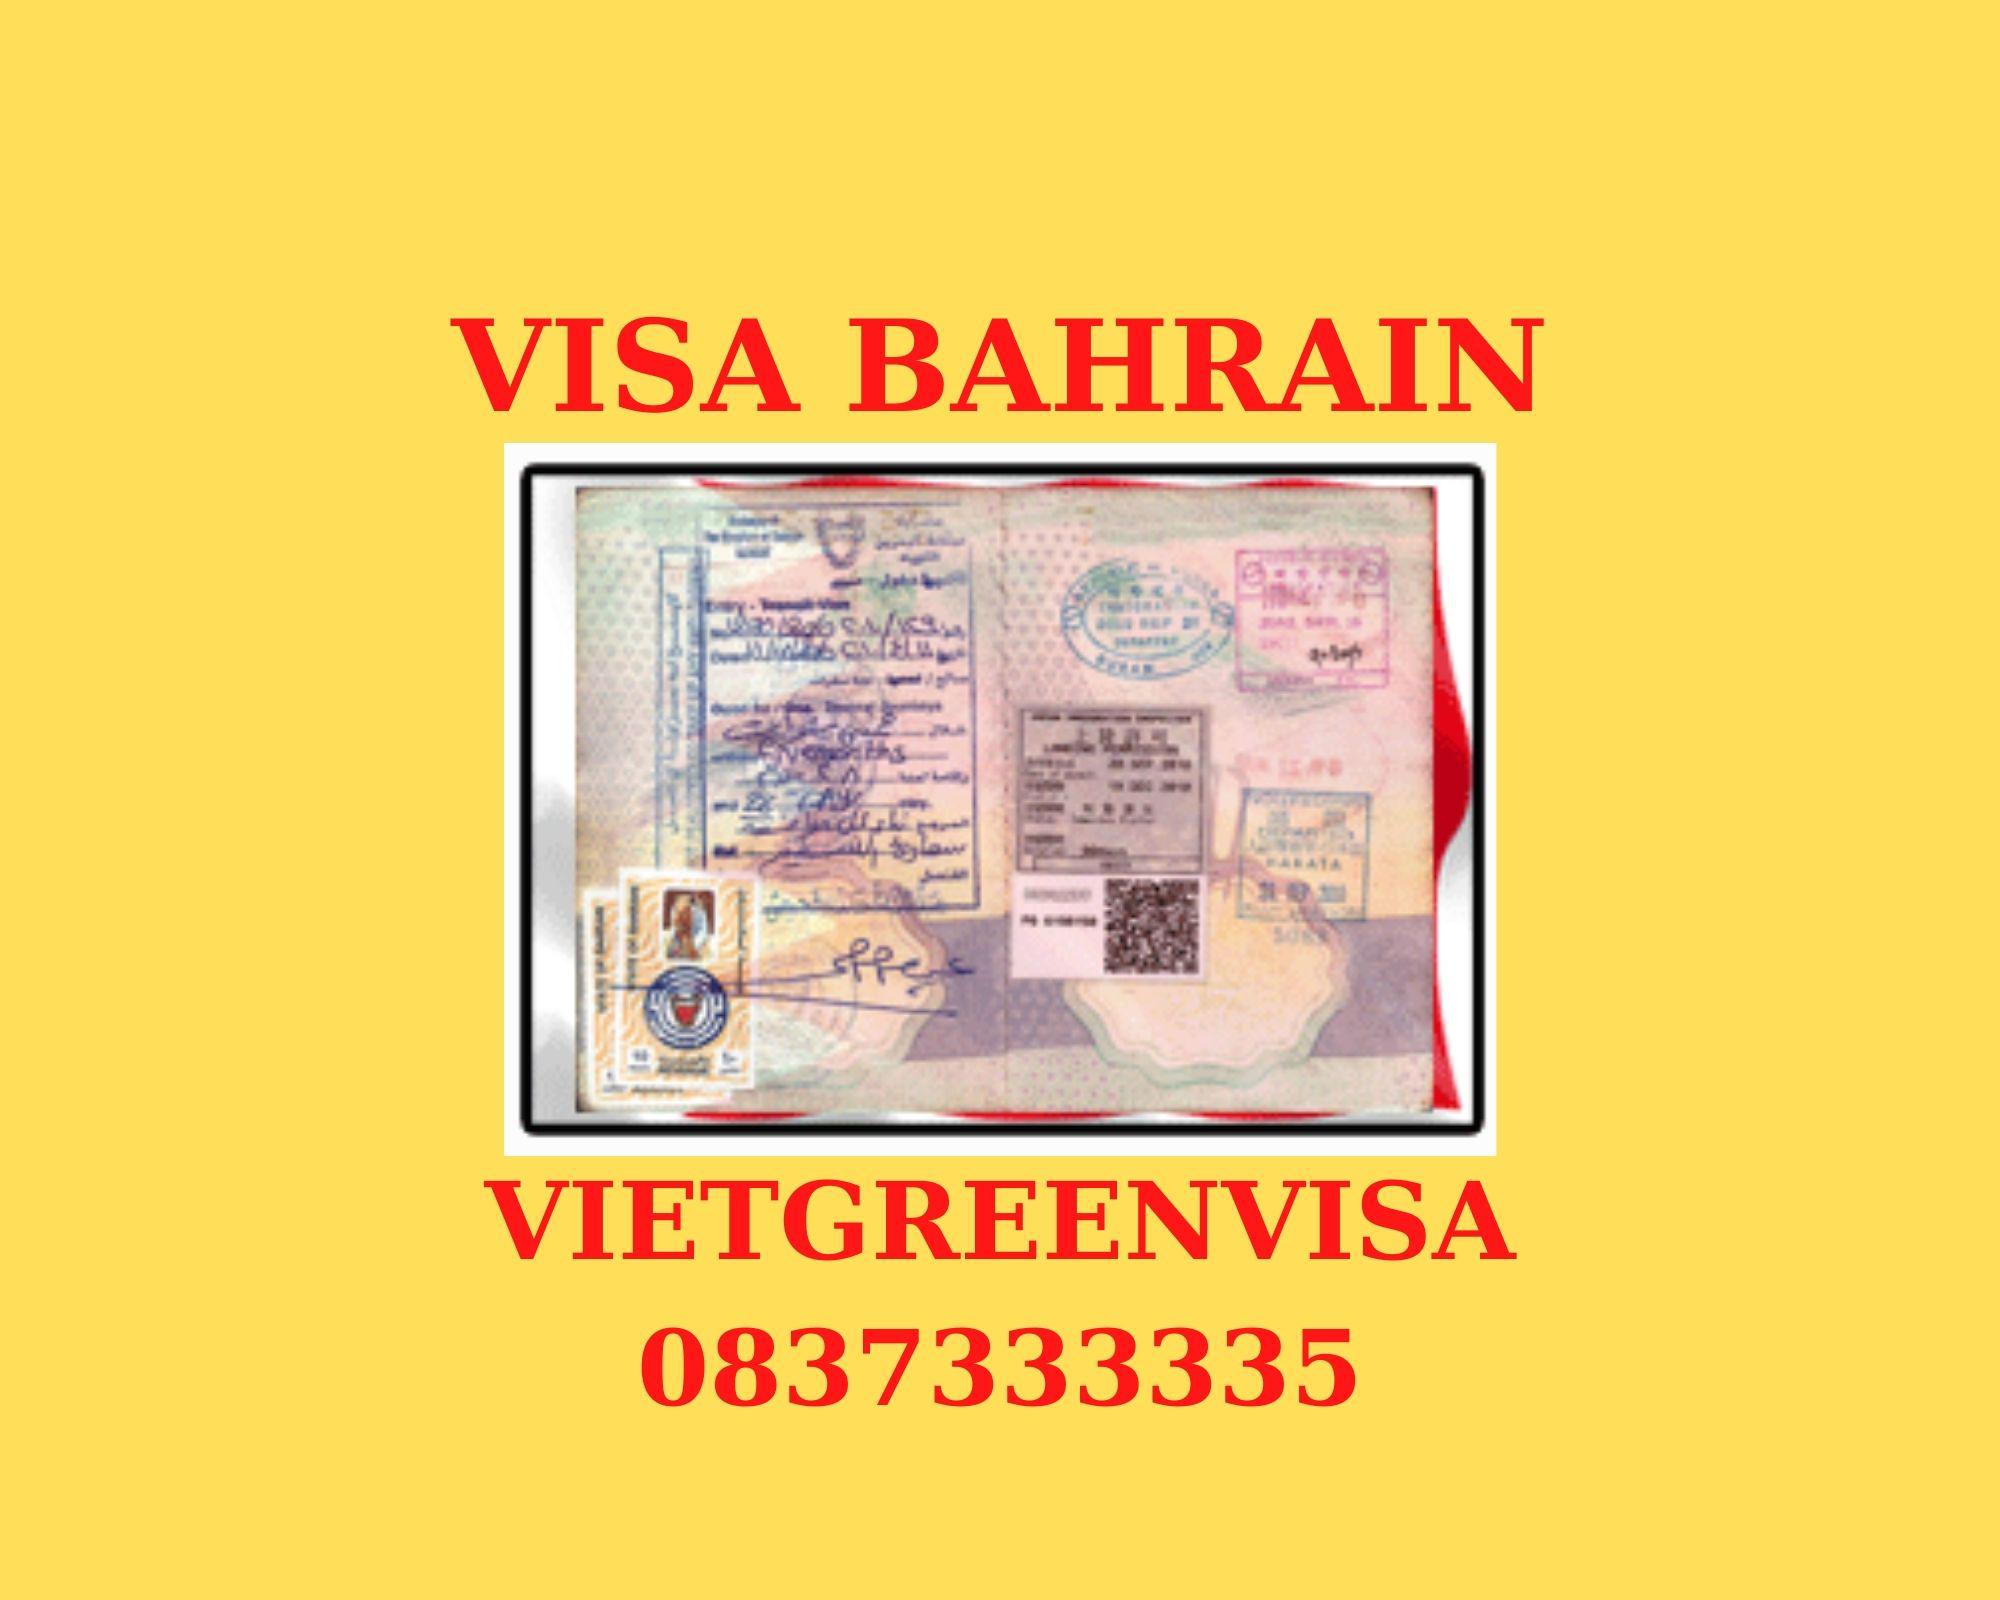 Dịch vụ visa Bahrain lưu trú 30 ngày tại Hà Nội, TP HCM